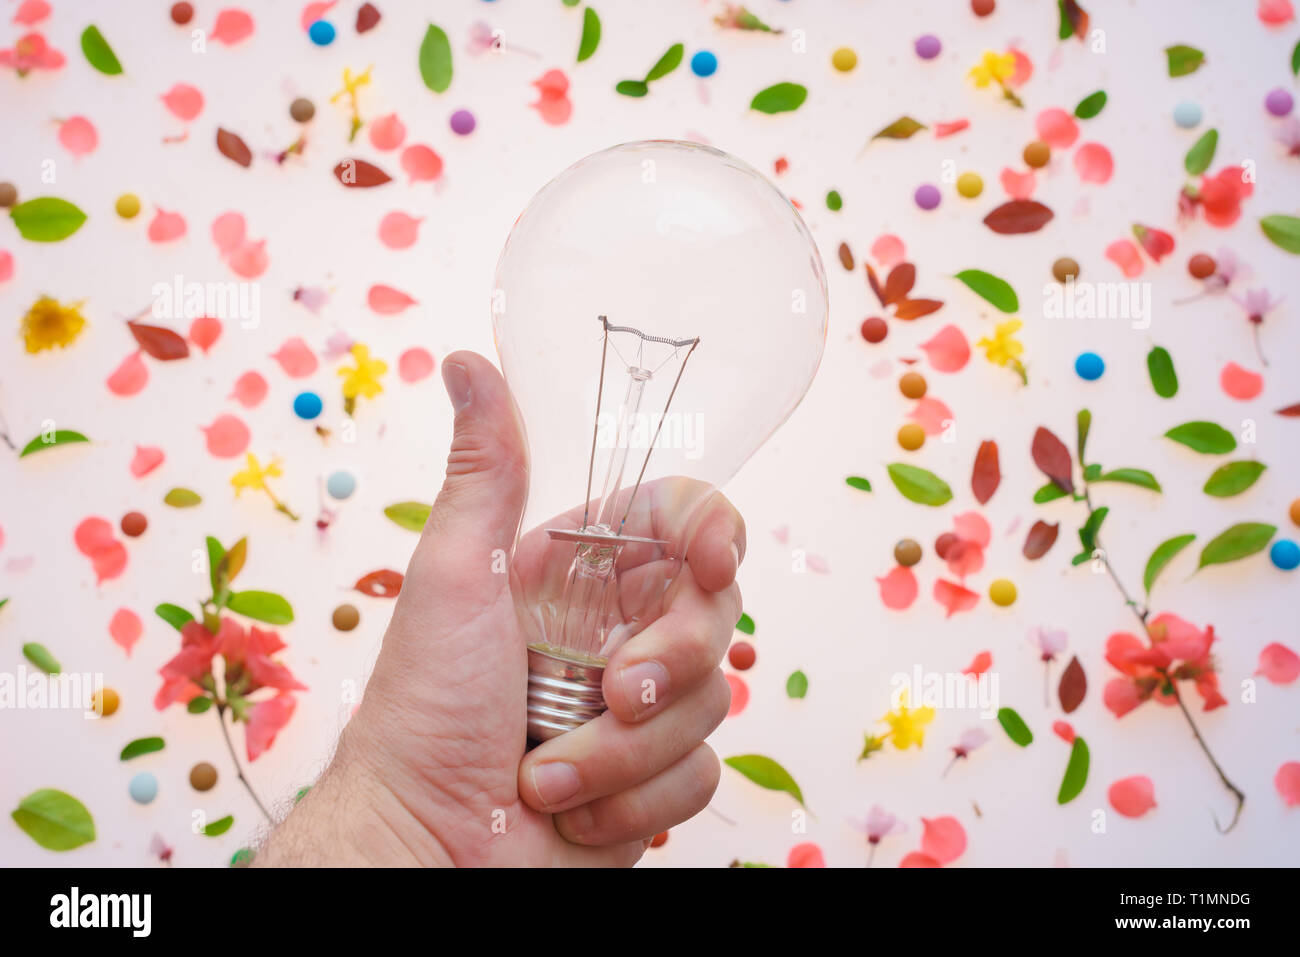 Die Glühbirne in der Hand, wie Kreativität und neue Ideen Konzept über den Frühling Blumenschmuck von bunten Blüten und Blätter Stockfoto